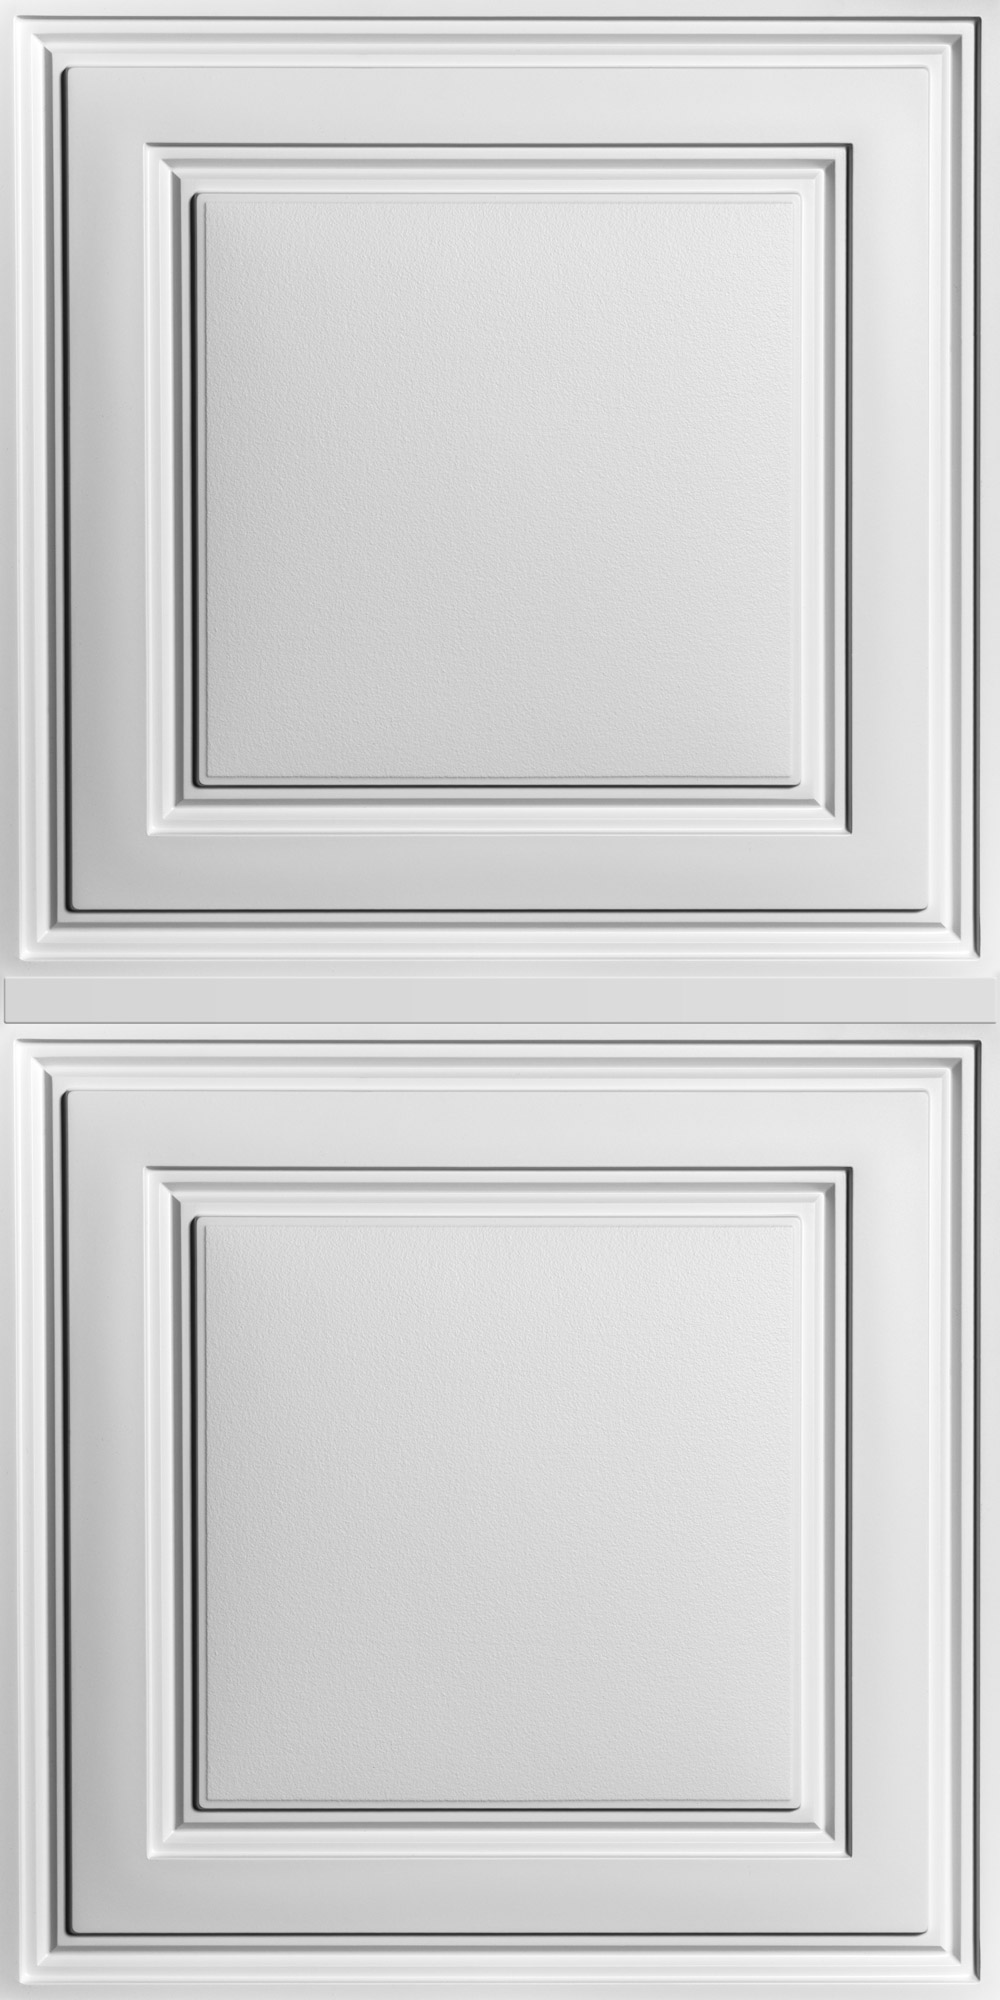 Stratford White Ceiling Panels, Stratford Ceiling Tiles 2×2